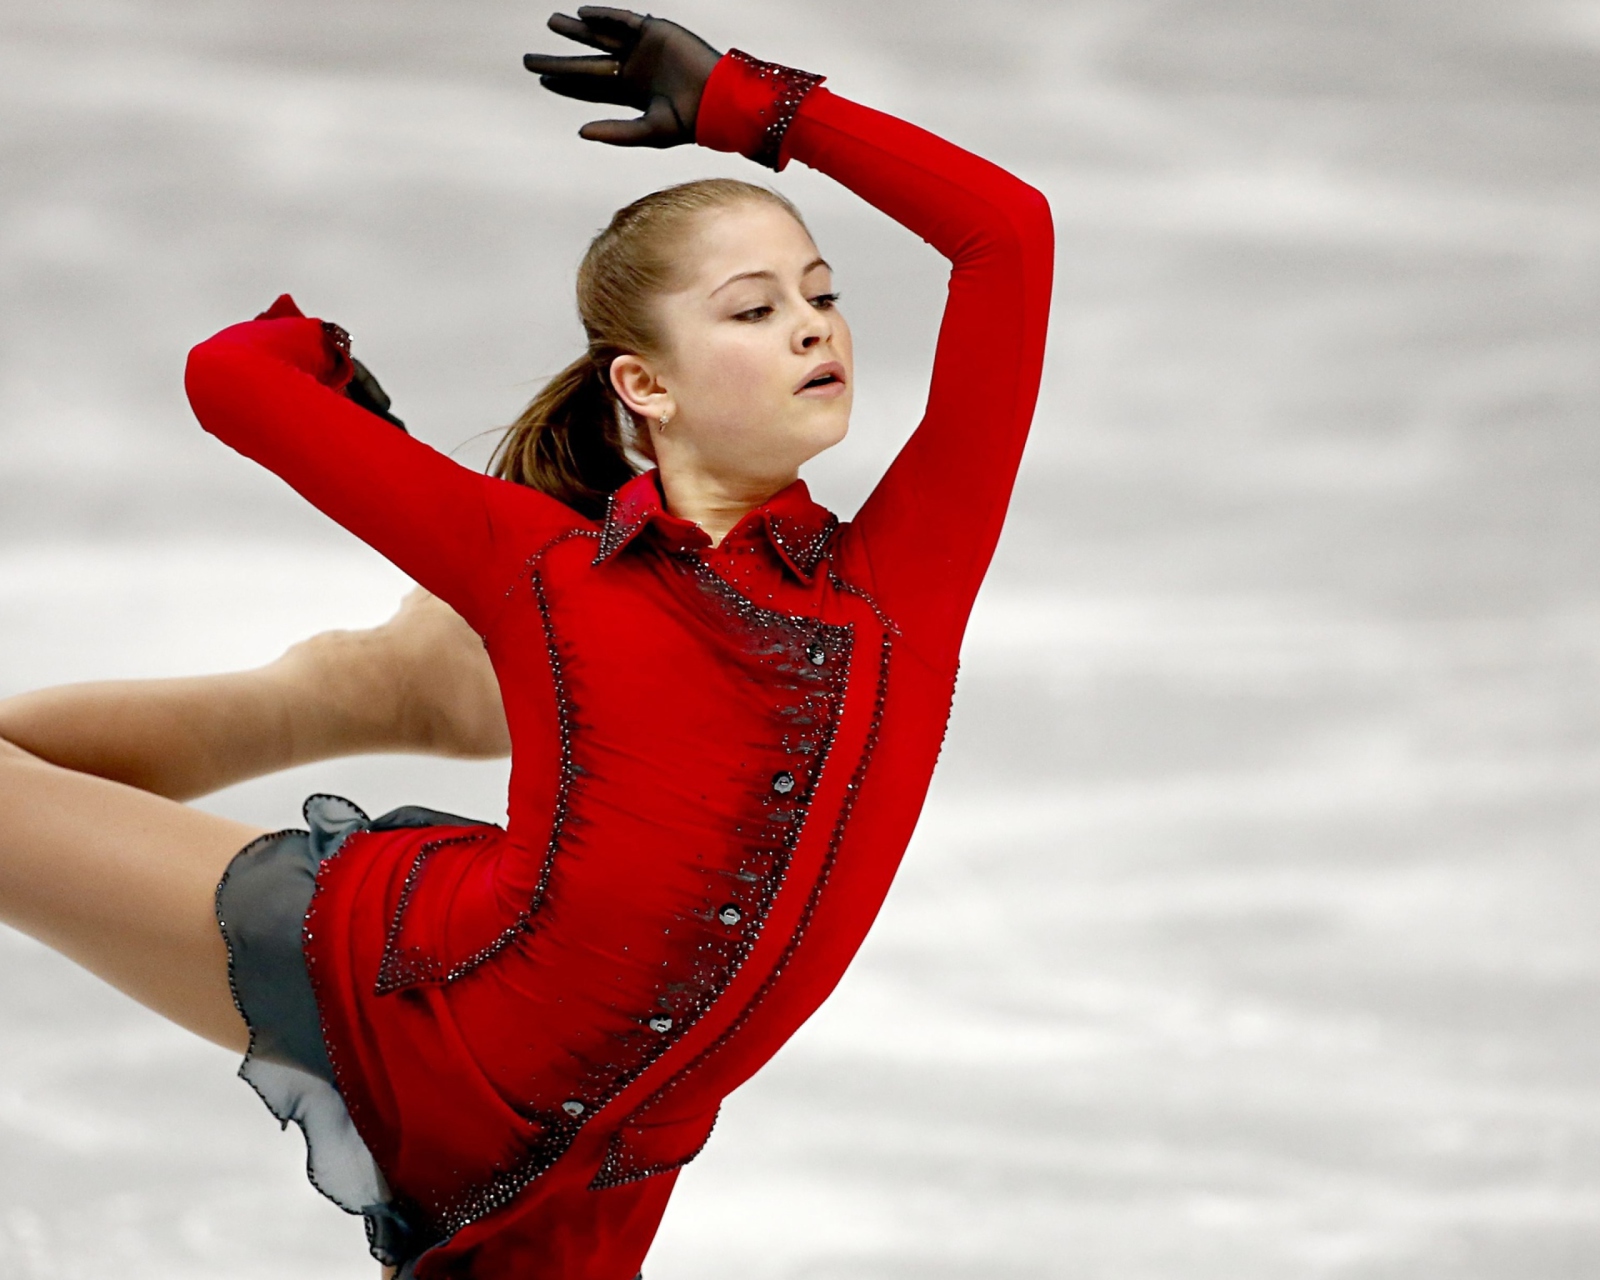 Yulia Lipnitskaya Champion In Sochi 2014 Winter Olympics screenshot #1 1600x1280